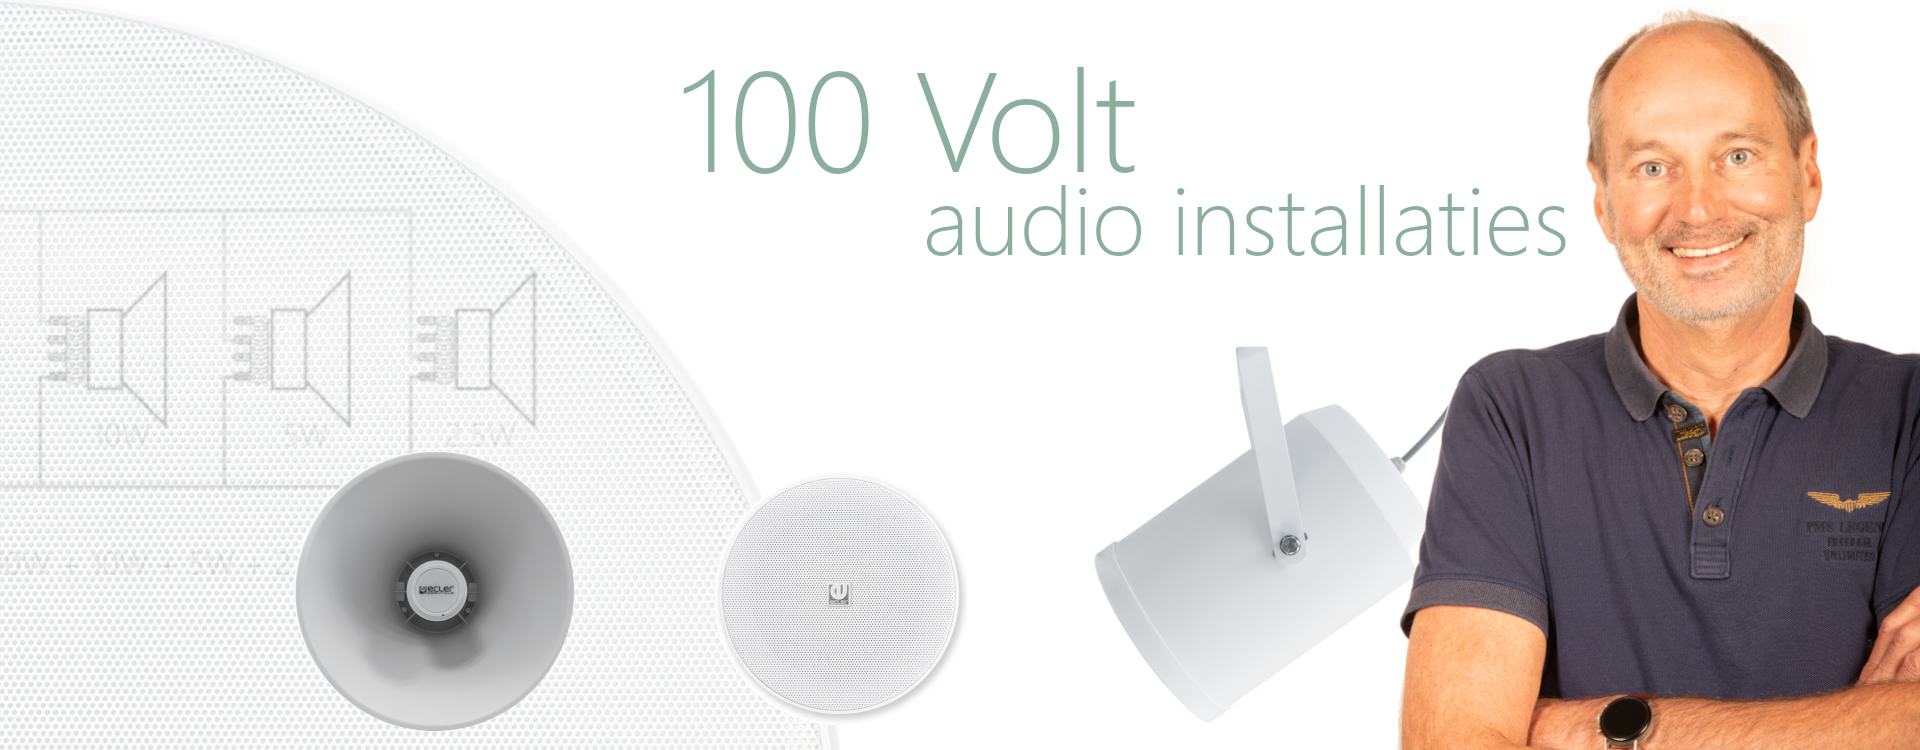 Stier Ale Luik 100 Volt audio-installaties